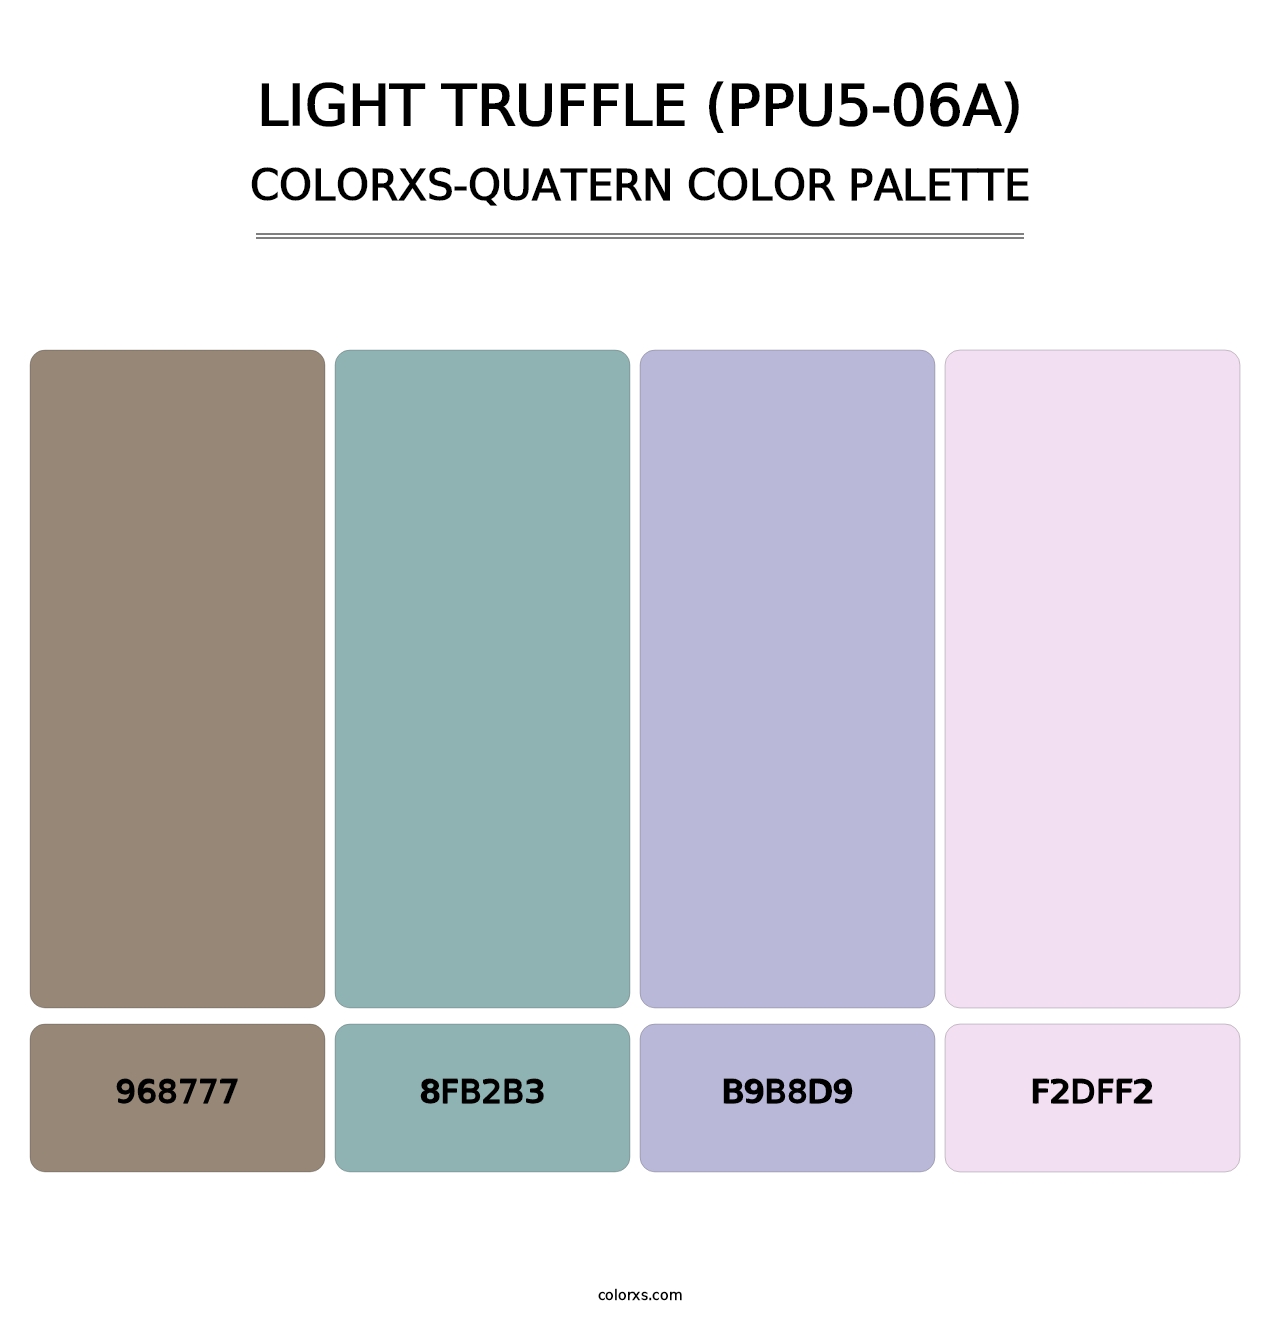 Light Truffle (PPU5-06A) - Colorxs Quatern Palette